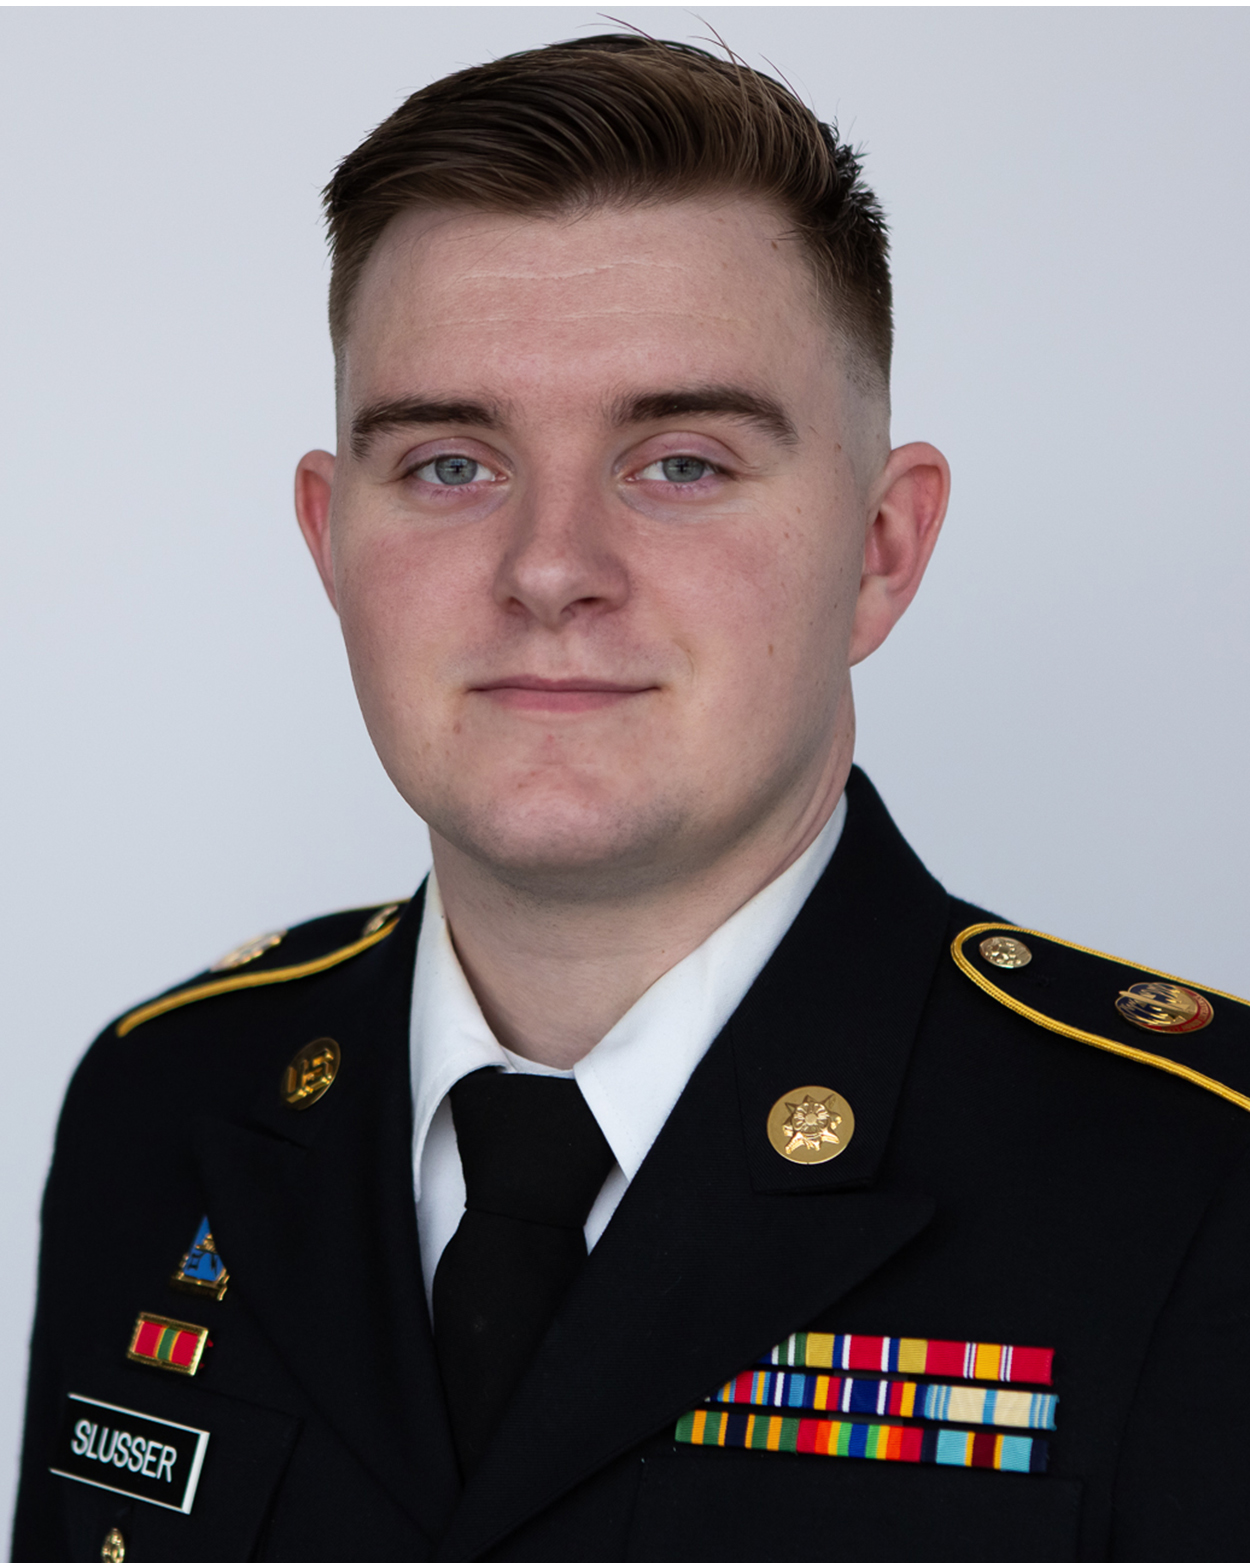 Denny Slusser headshot in Army uniform